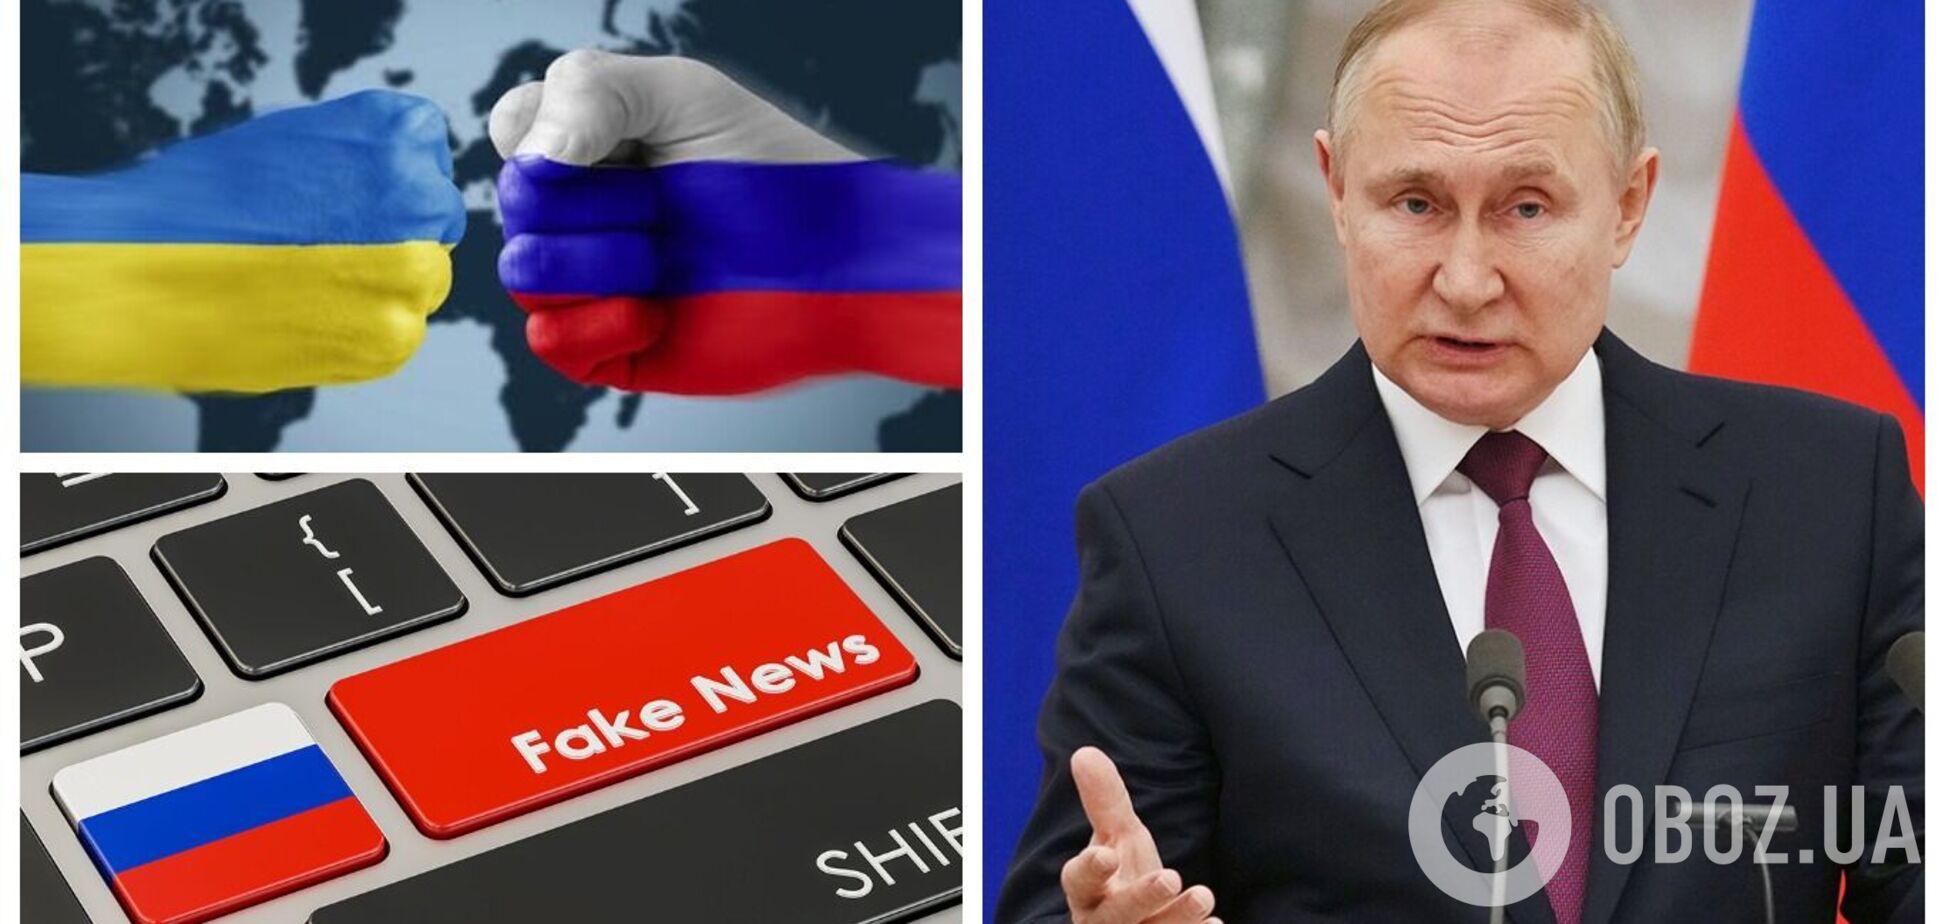 'Война' Путина уже началась по телевизору: на Западе уличили Кремль во лжи об Украине